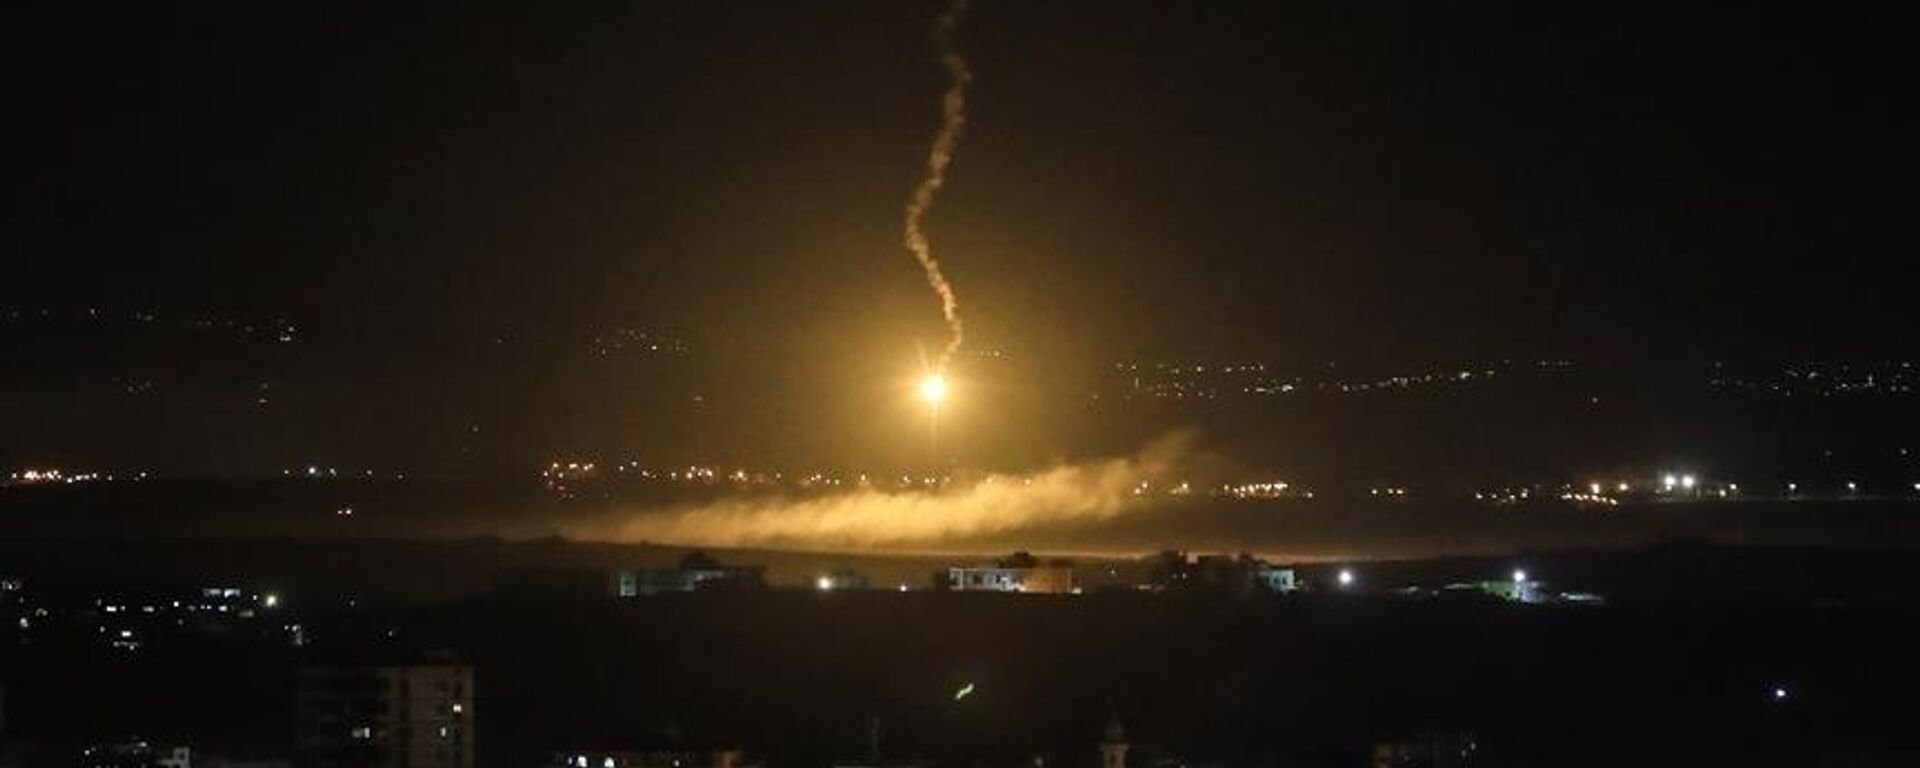 Suriye'nin başkenti Şam'da bazı noktalara İsrail tarafından hava saldırısı gerçekleştirildiği öne sürüldü. Hava savunma sistemlerinin saldırıları başarıyla püskürttüğü bildirildi.  - Sputnik Türkiye, 1920, 22.03.2023